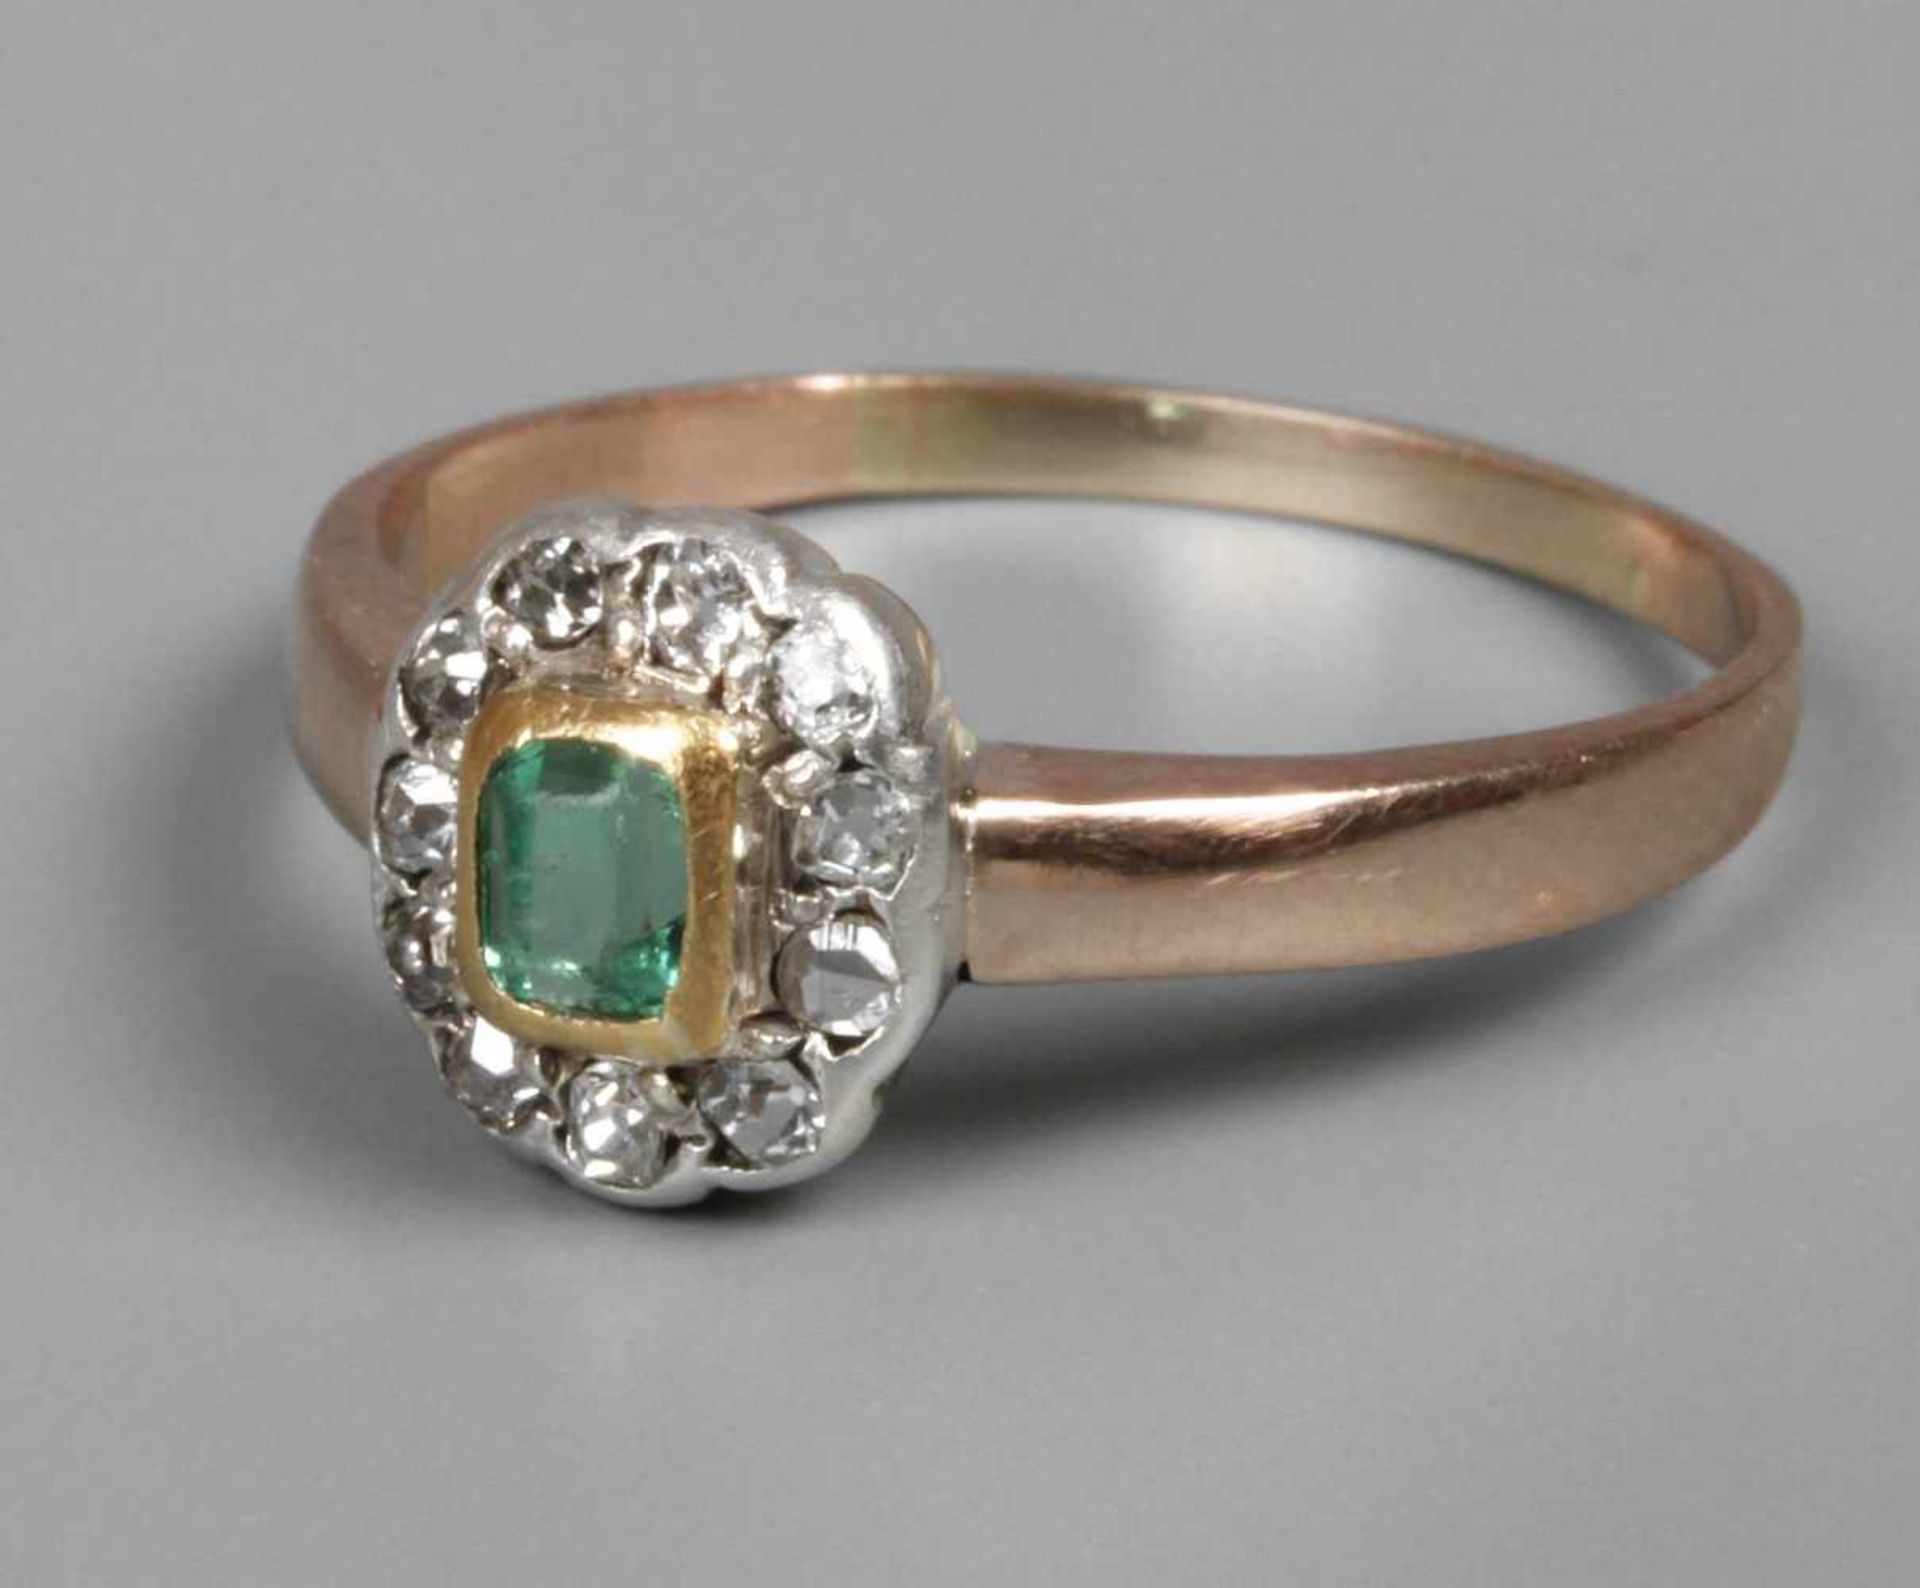 Damenring mit Smaragd und DiamantenAnfang 20. Jh., Weiß- und Roségold 333 geprüft, ca. 8 mm hoher